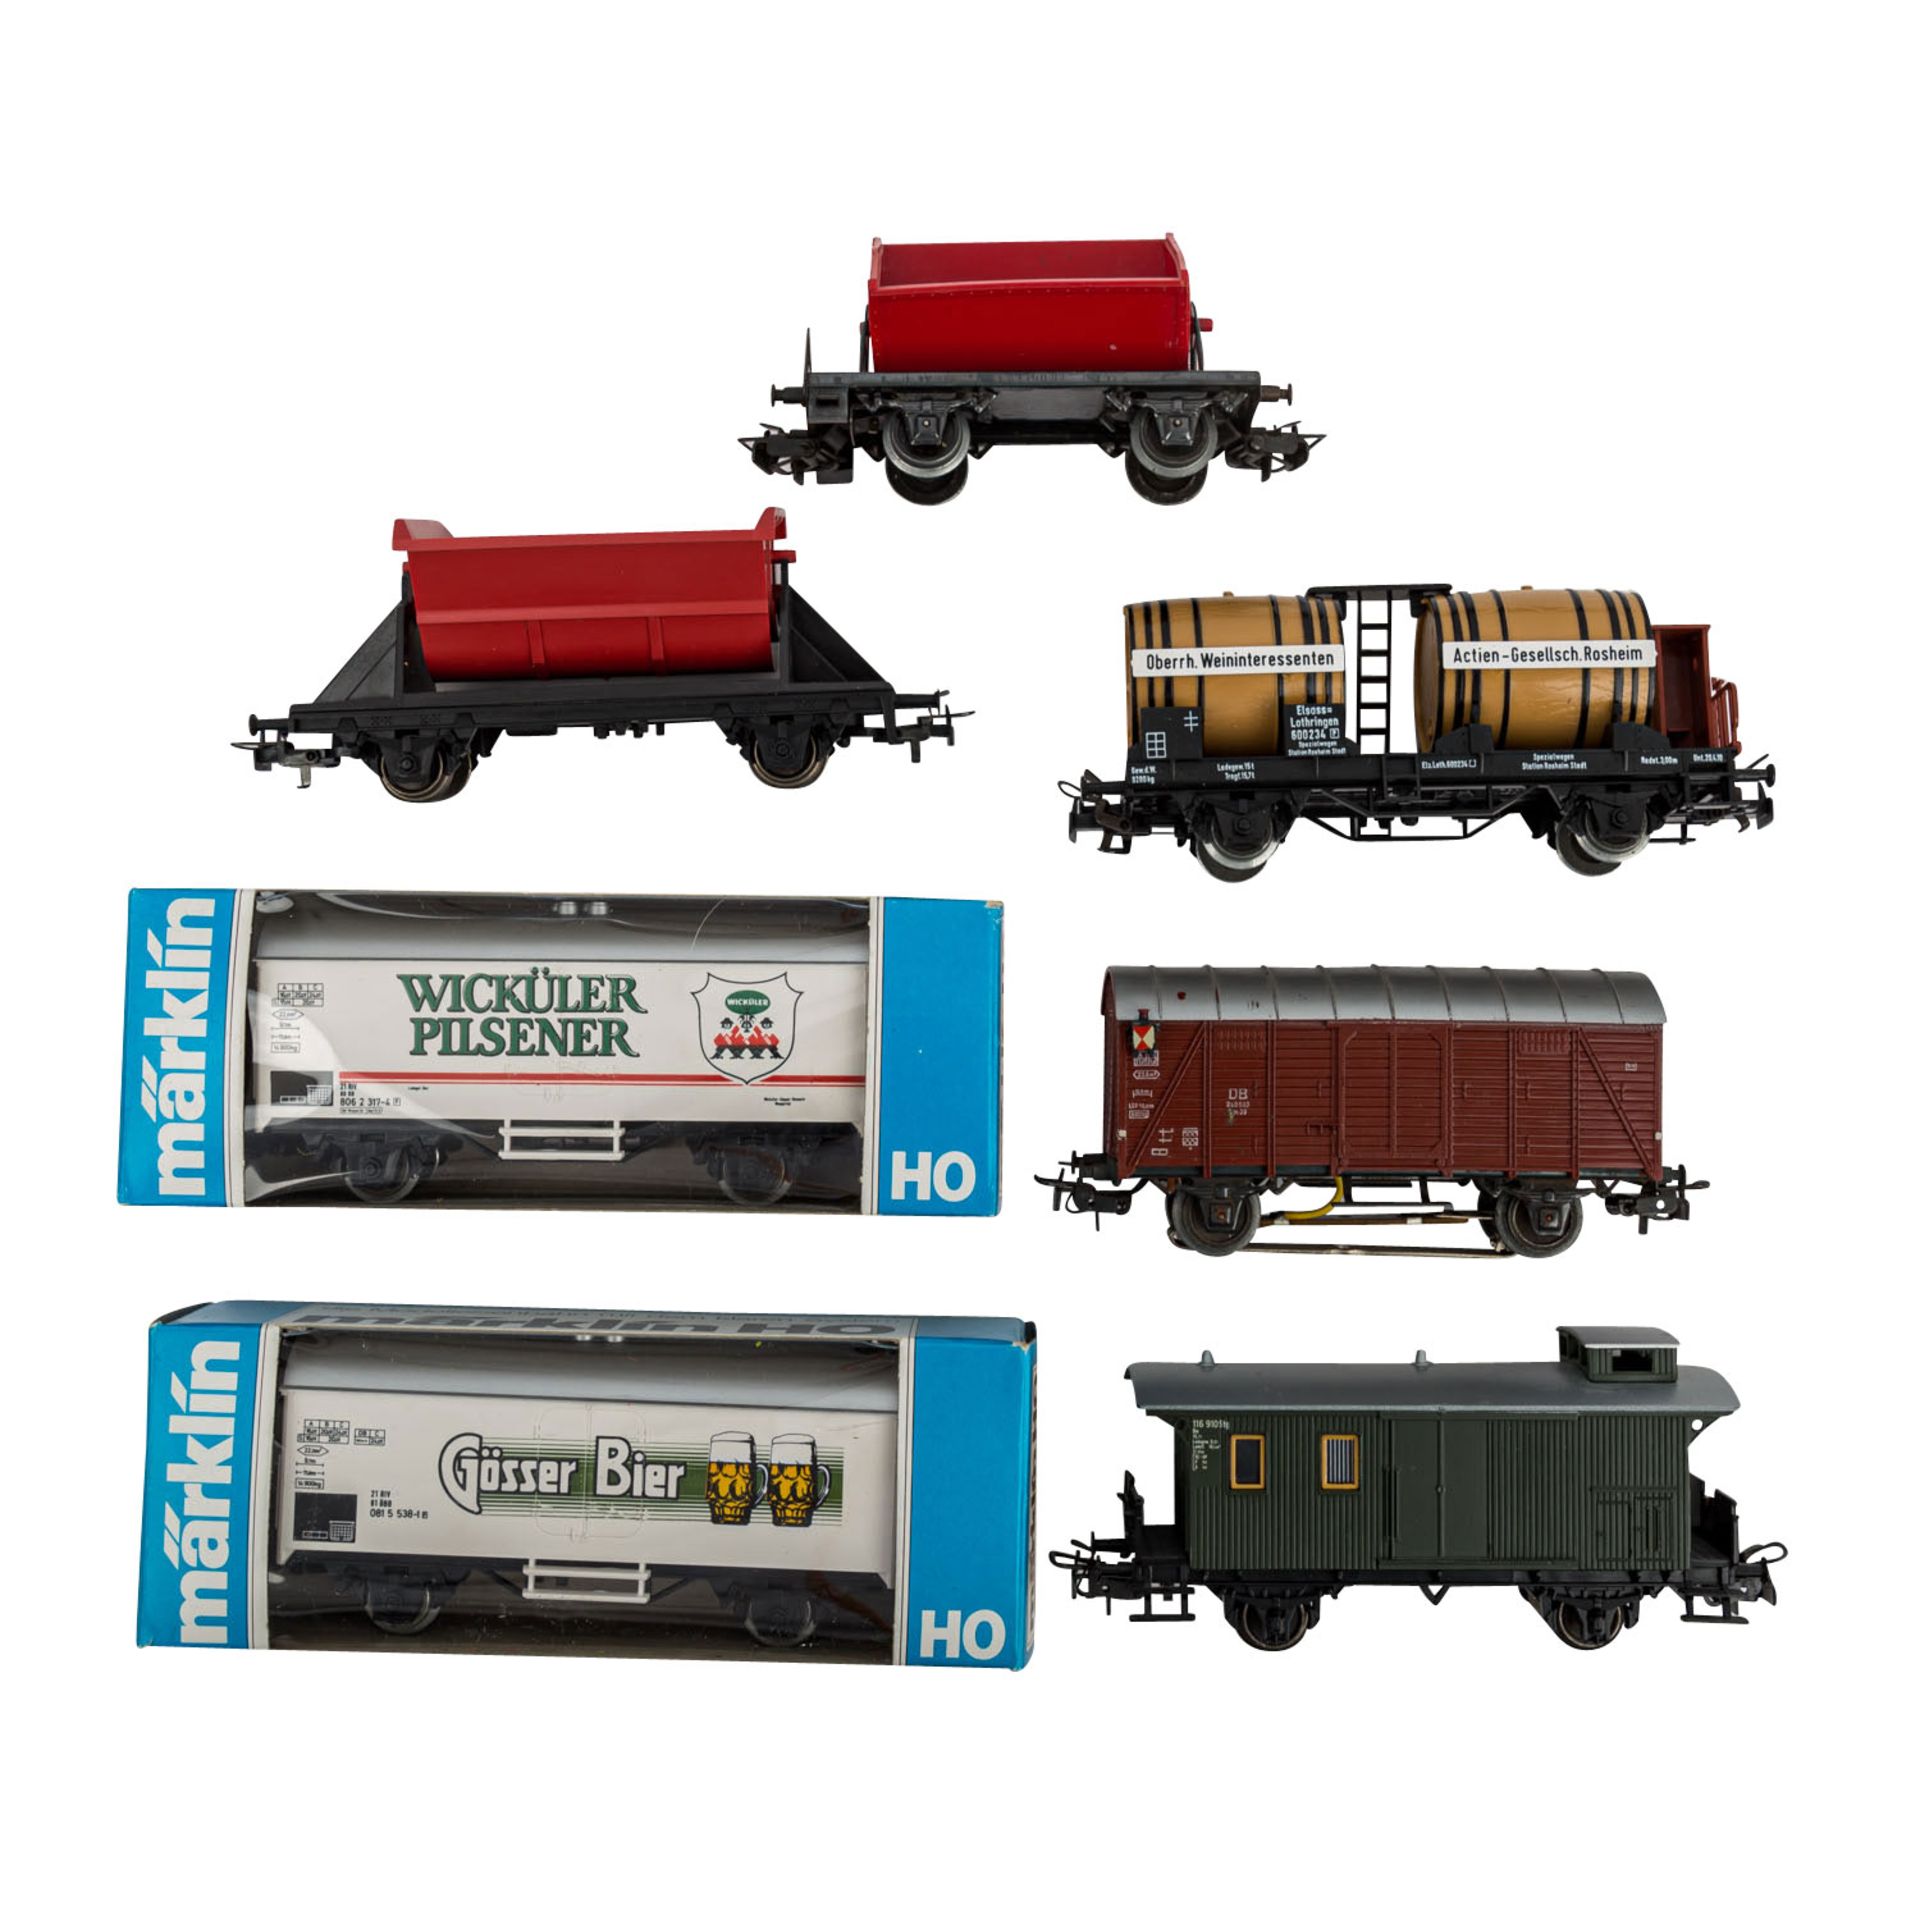 MÄRKLIN umfangreiches Konvolut Lokomotiven und Güterwagen, Spur H 0,bestehend aus zwei E-Loks 3022 - Bild 3 aus 5